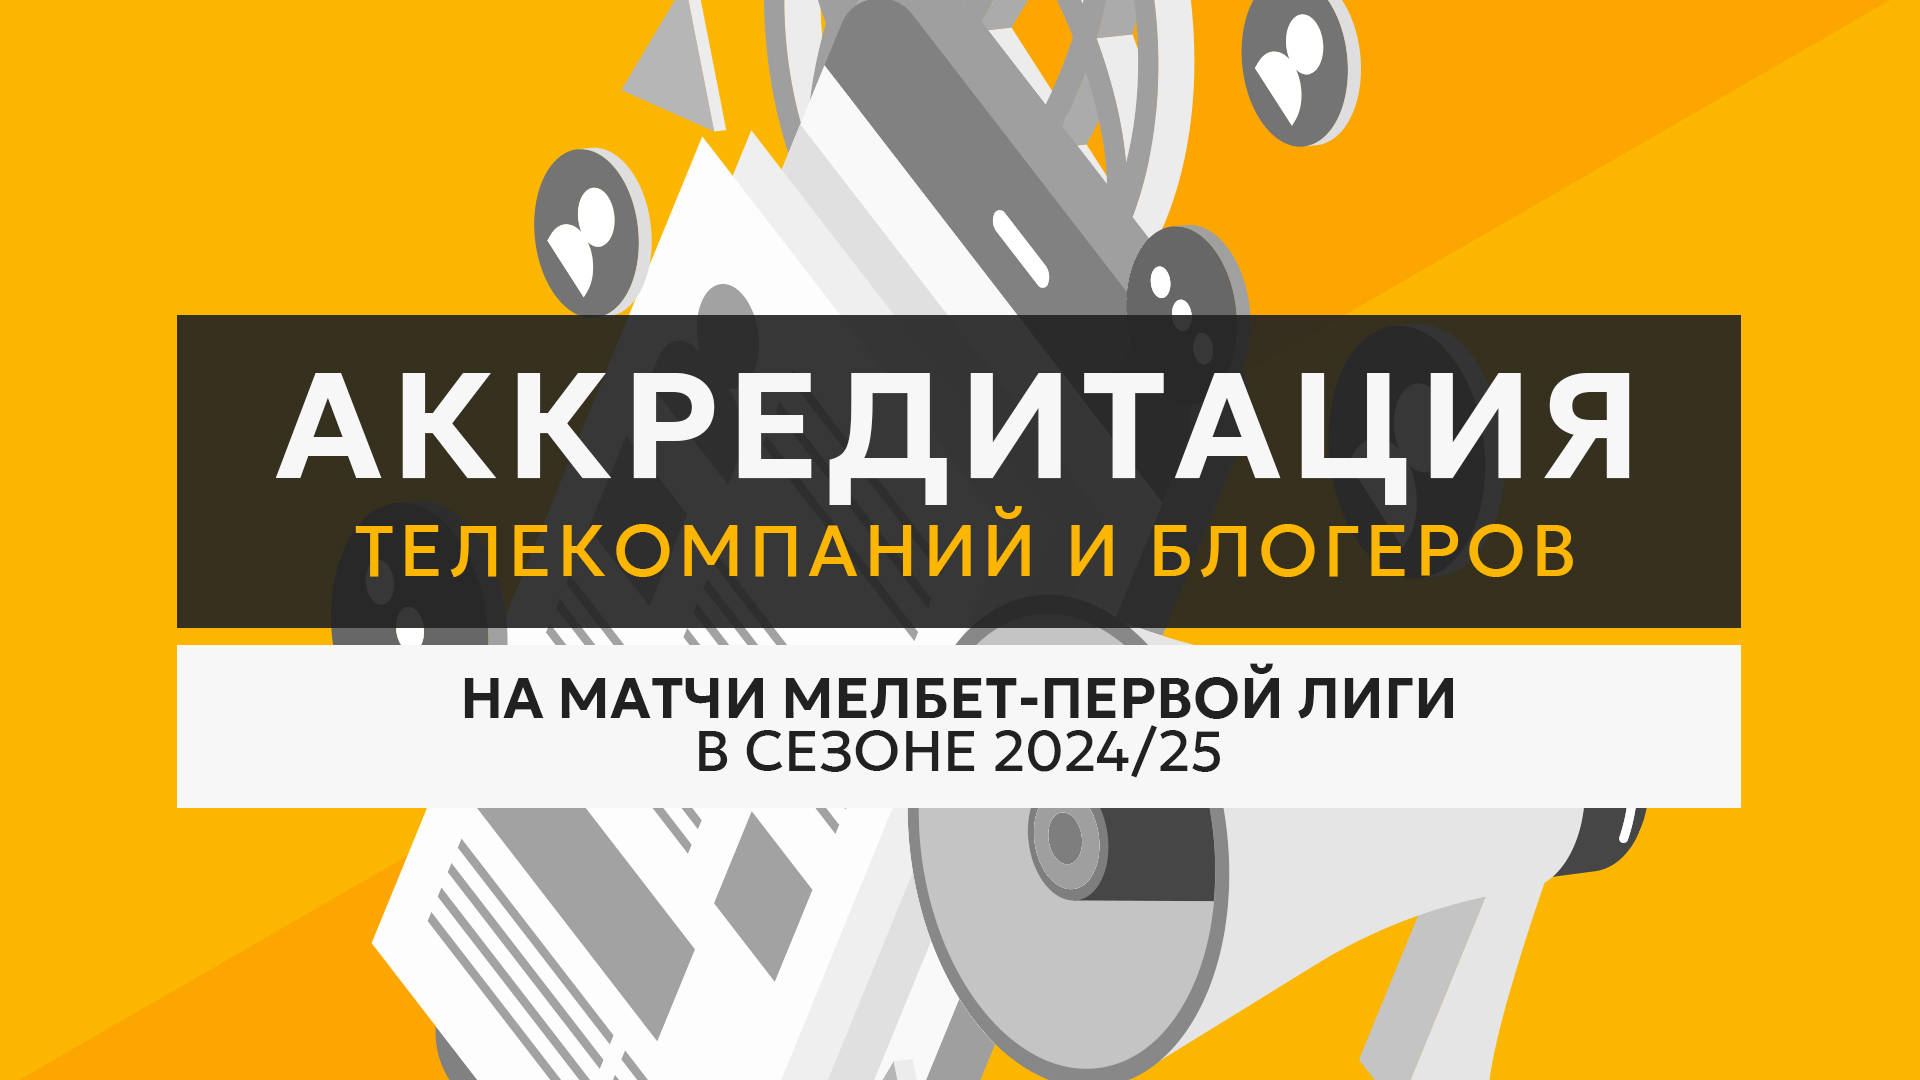 Открыта аккредитация телекомпаний и блогеров на матчи МЕЛБЕТ-Первой лиги в сезоне 2024/25